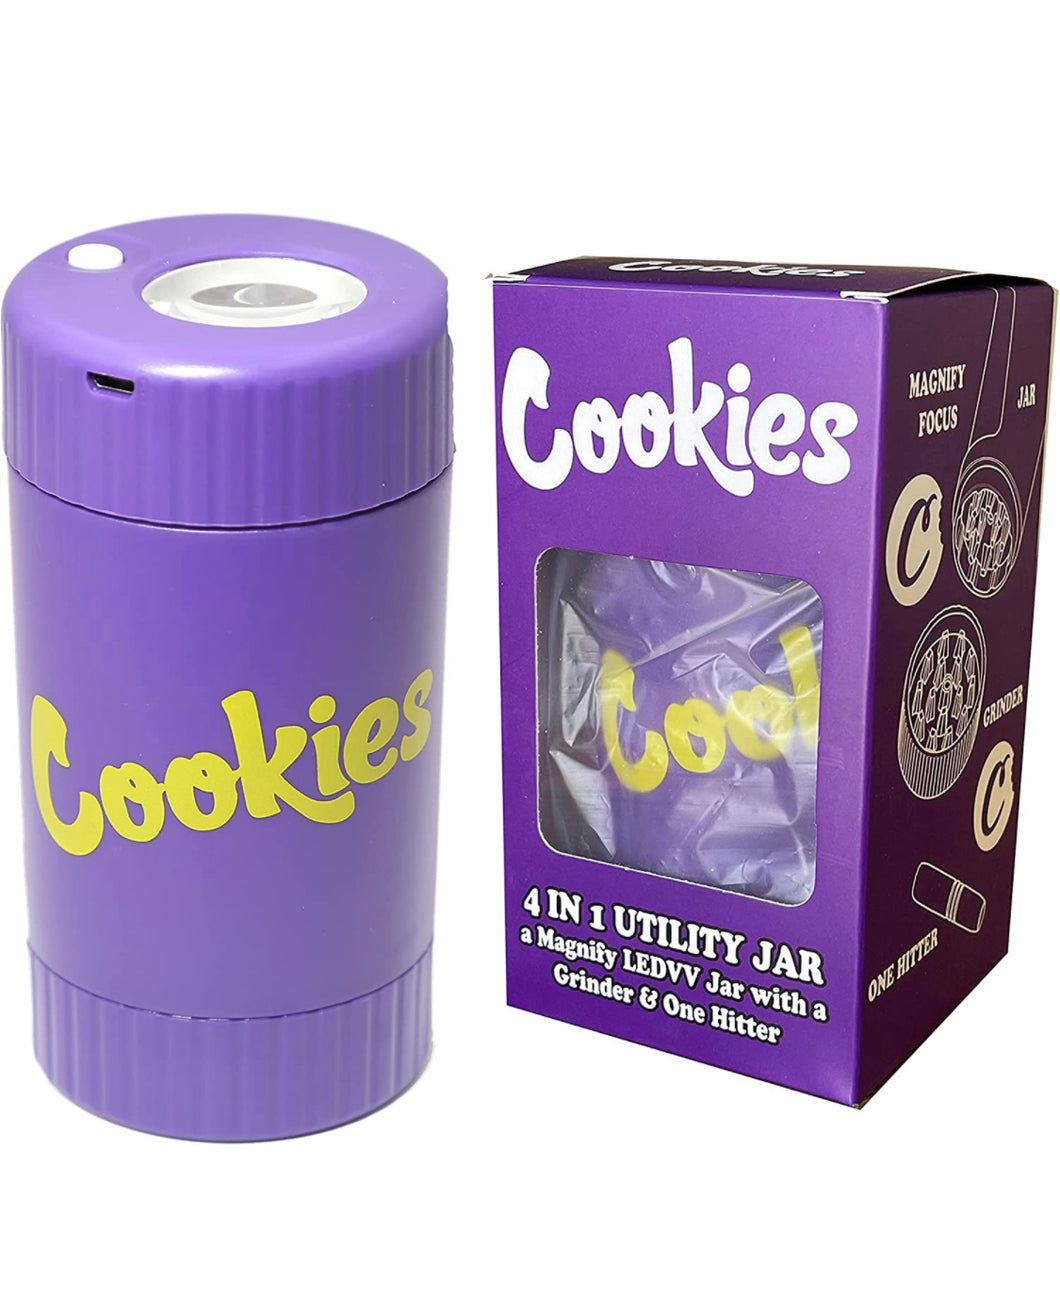 Cookies Jar with grinder